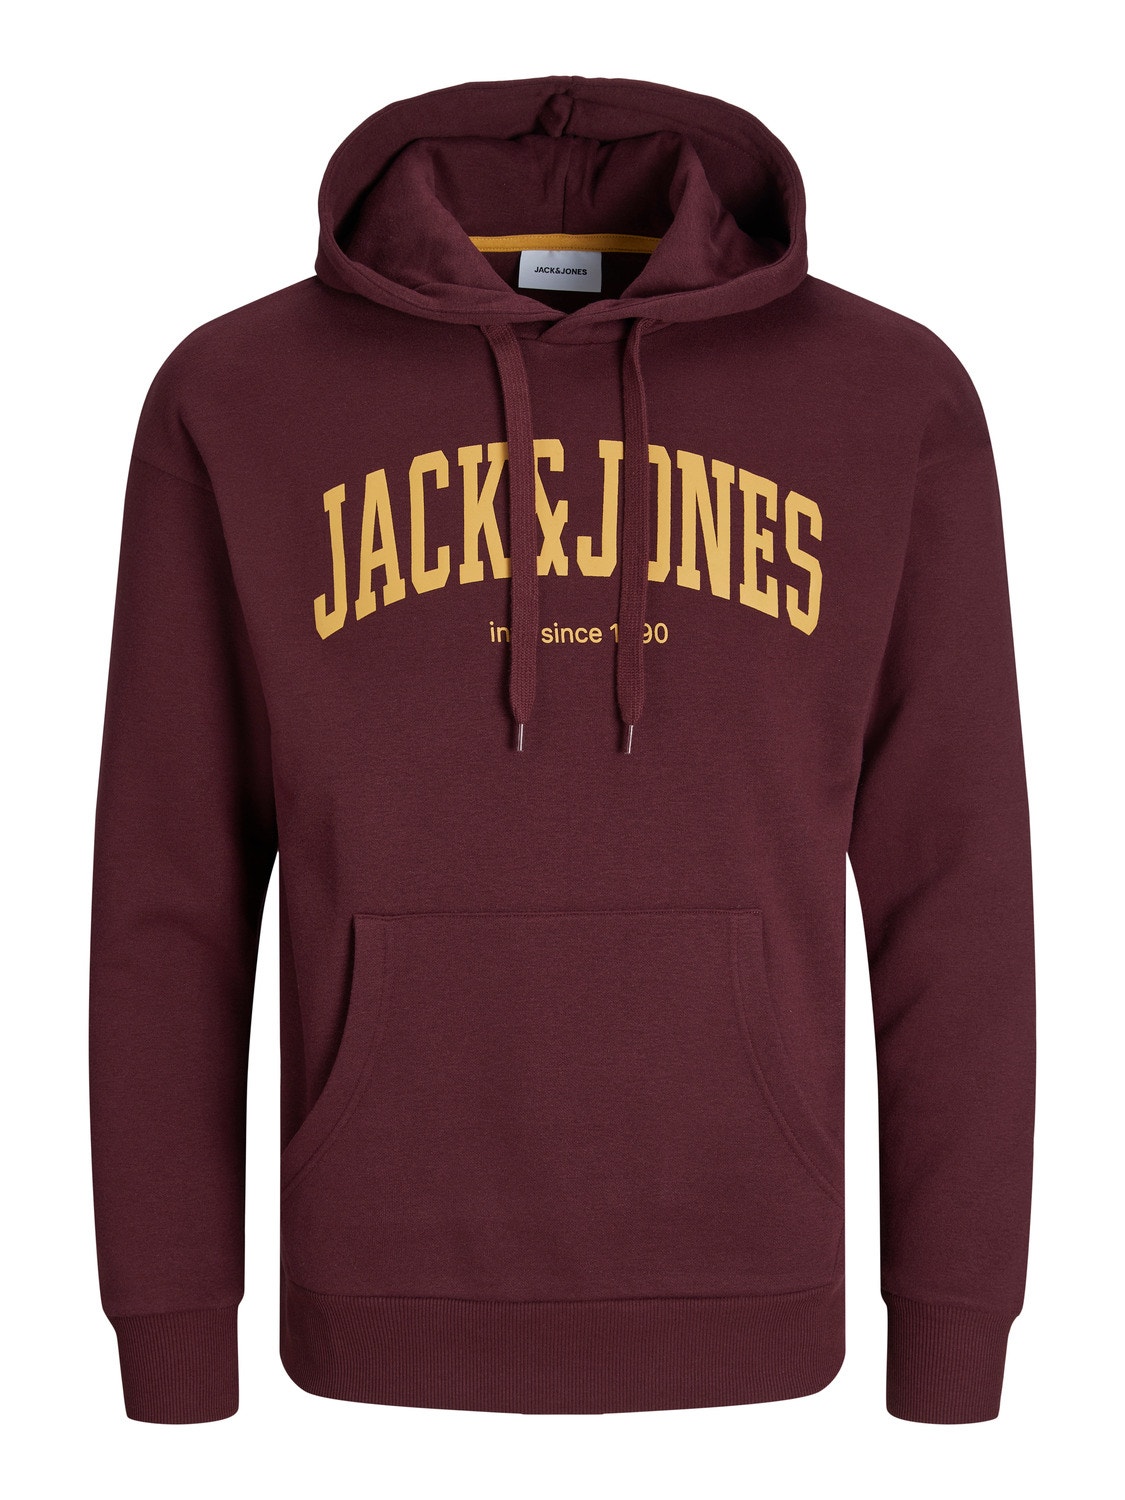 Jack & Jones Hoodie Logo -Port Royale - 12236513